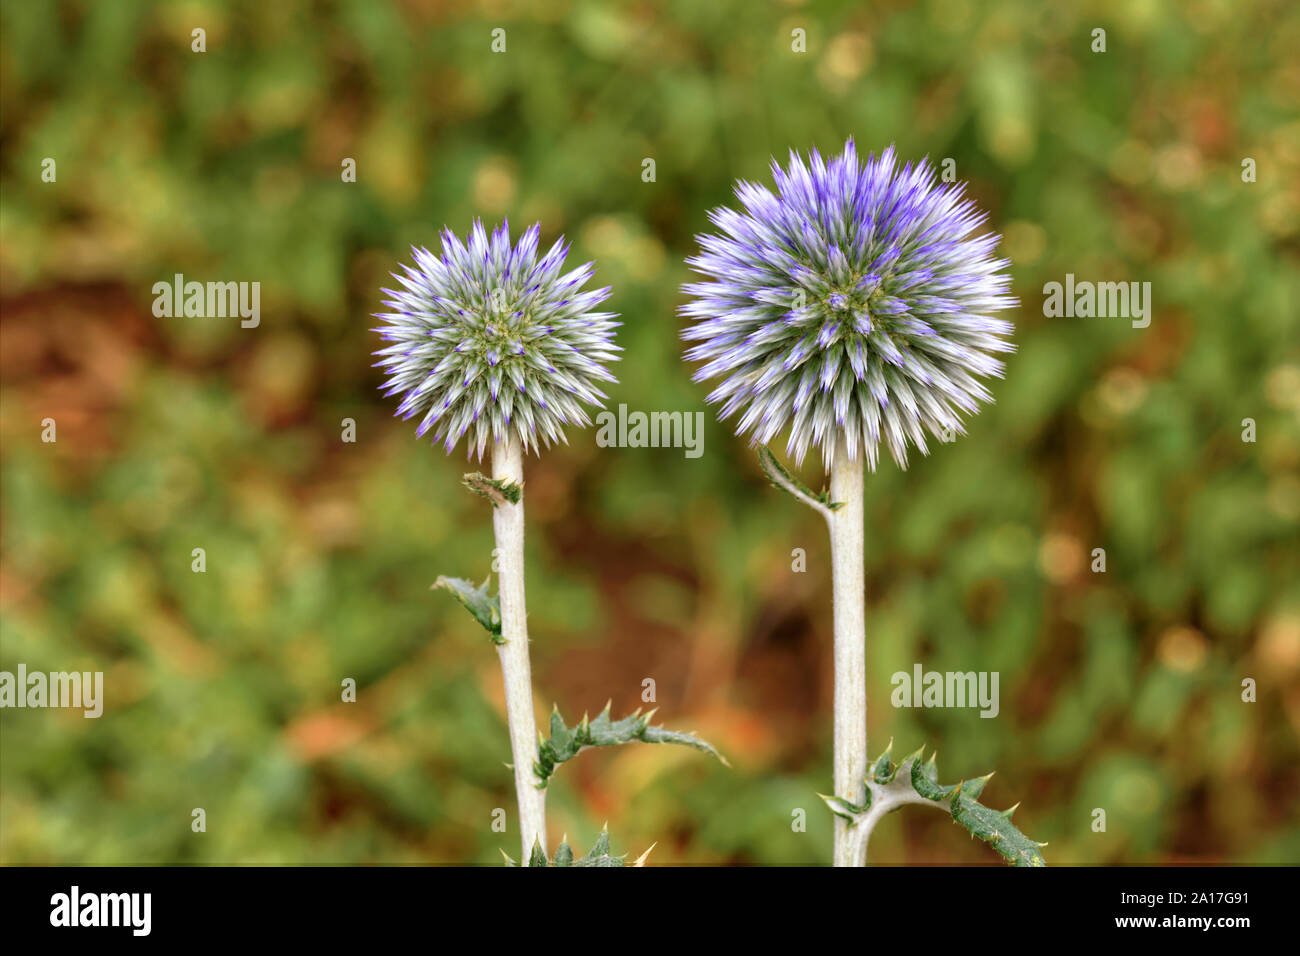 Bello e insolito fiori rotondo di spine di forma sferica di colore lilla su un prato verde in background blur. Foto Stock